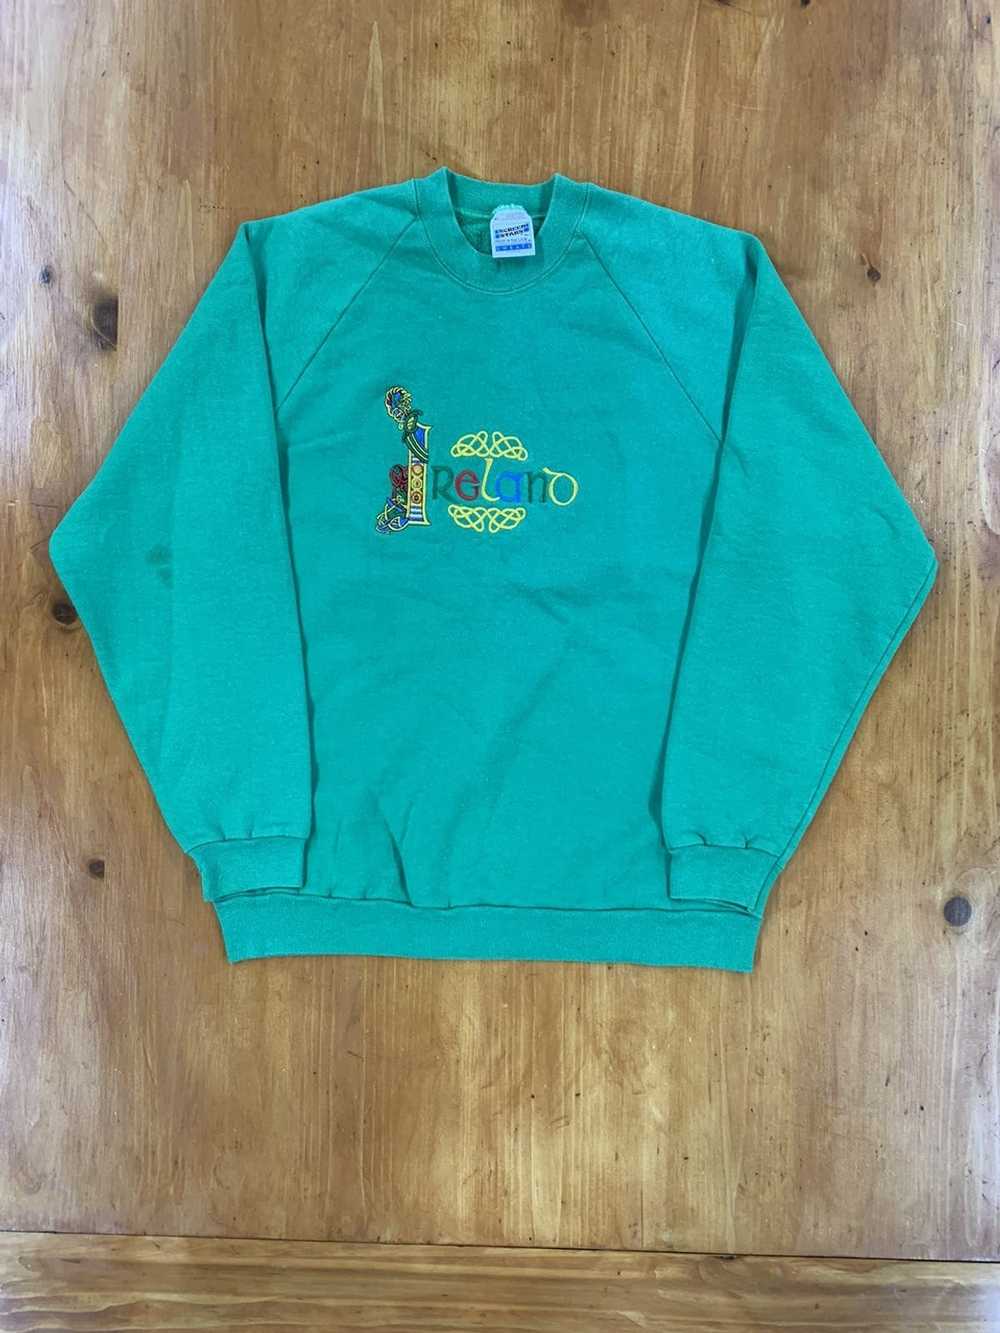 Vintage Vintage 1990s Ireland Sweatshirt Crewneck - image 2